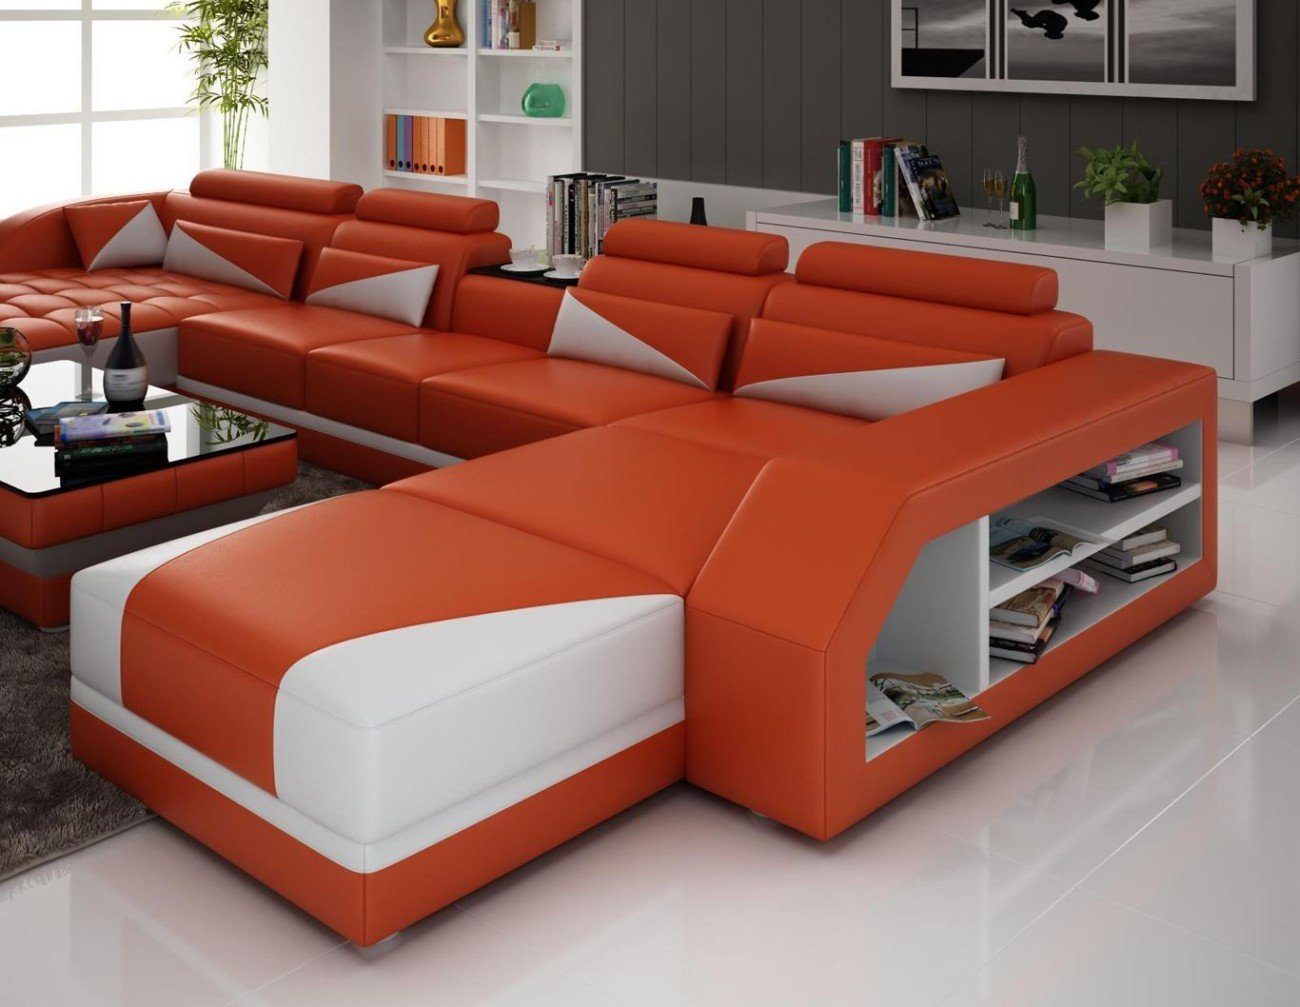 JVmoebel Ecksofa XXL Wohnlandschaft U Form Ecksofa Sofa Couch Polster Garnitur, Made in Europe Orange | Ecksofas